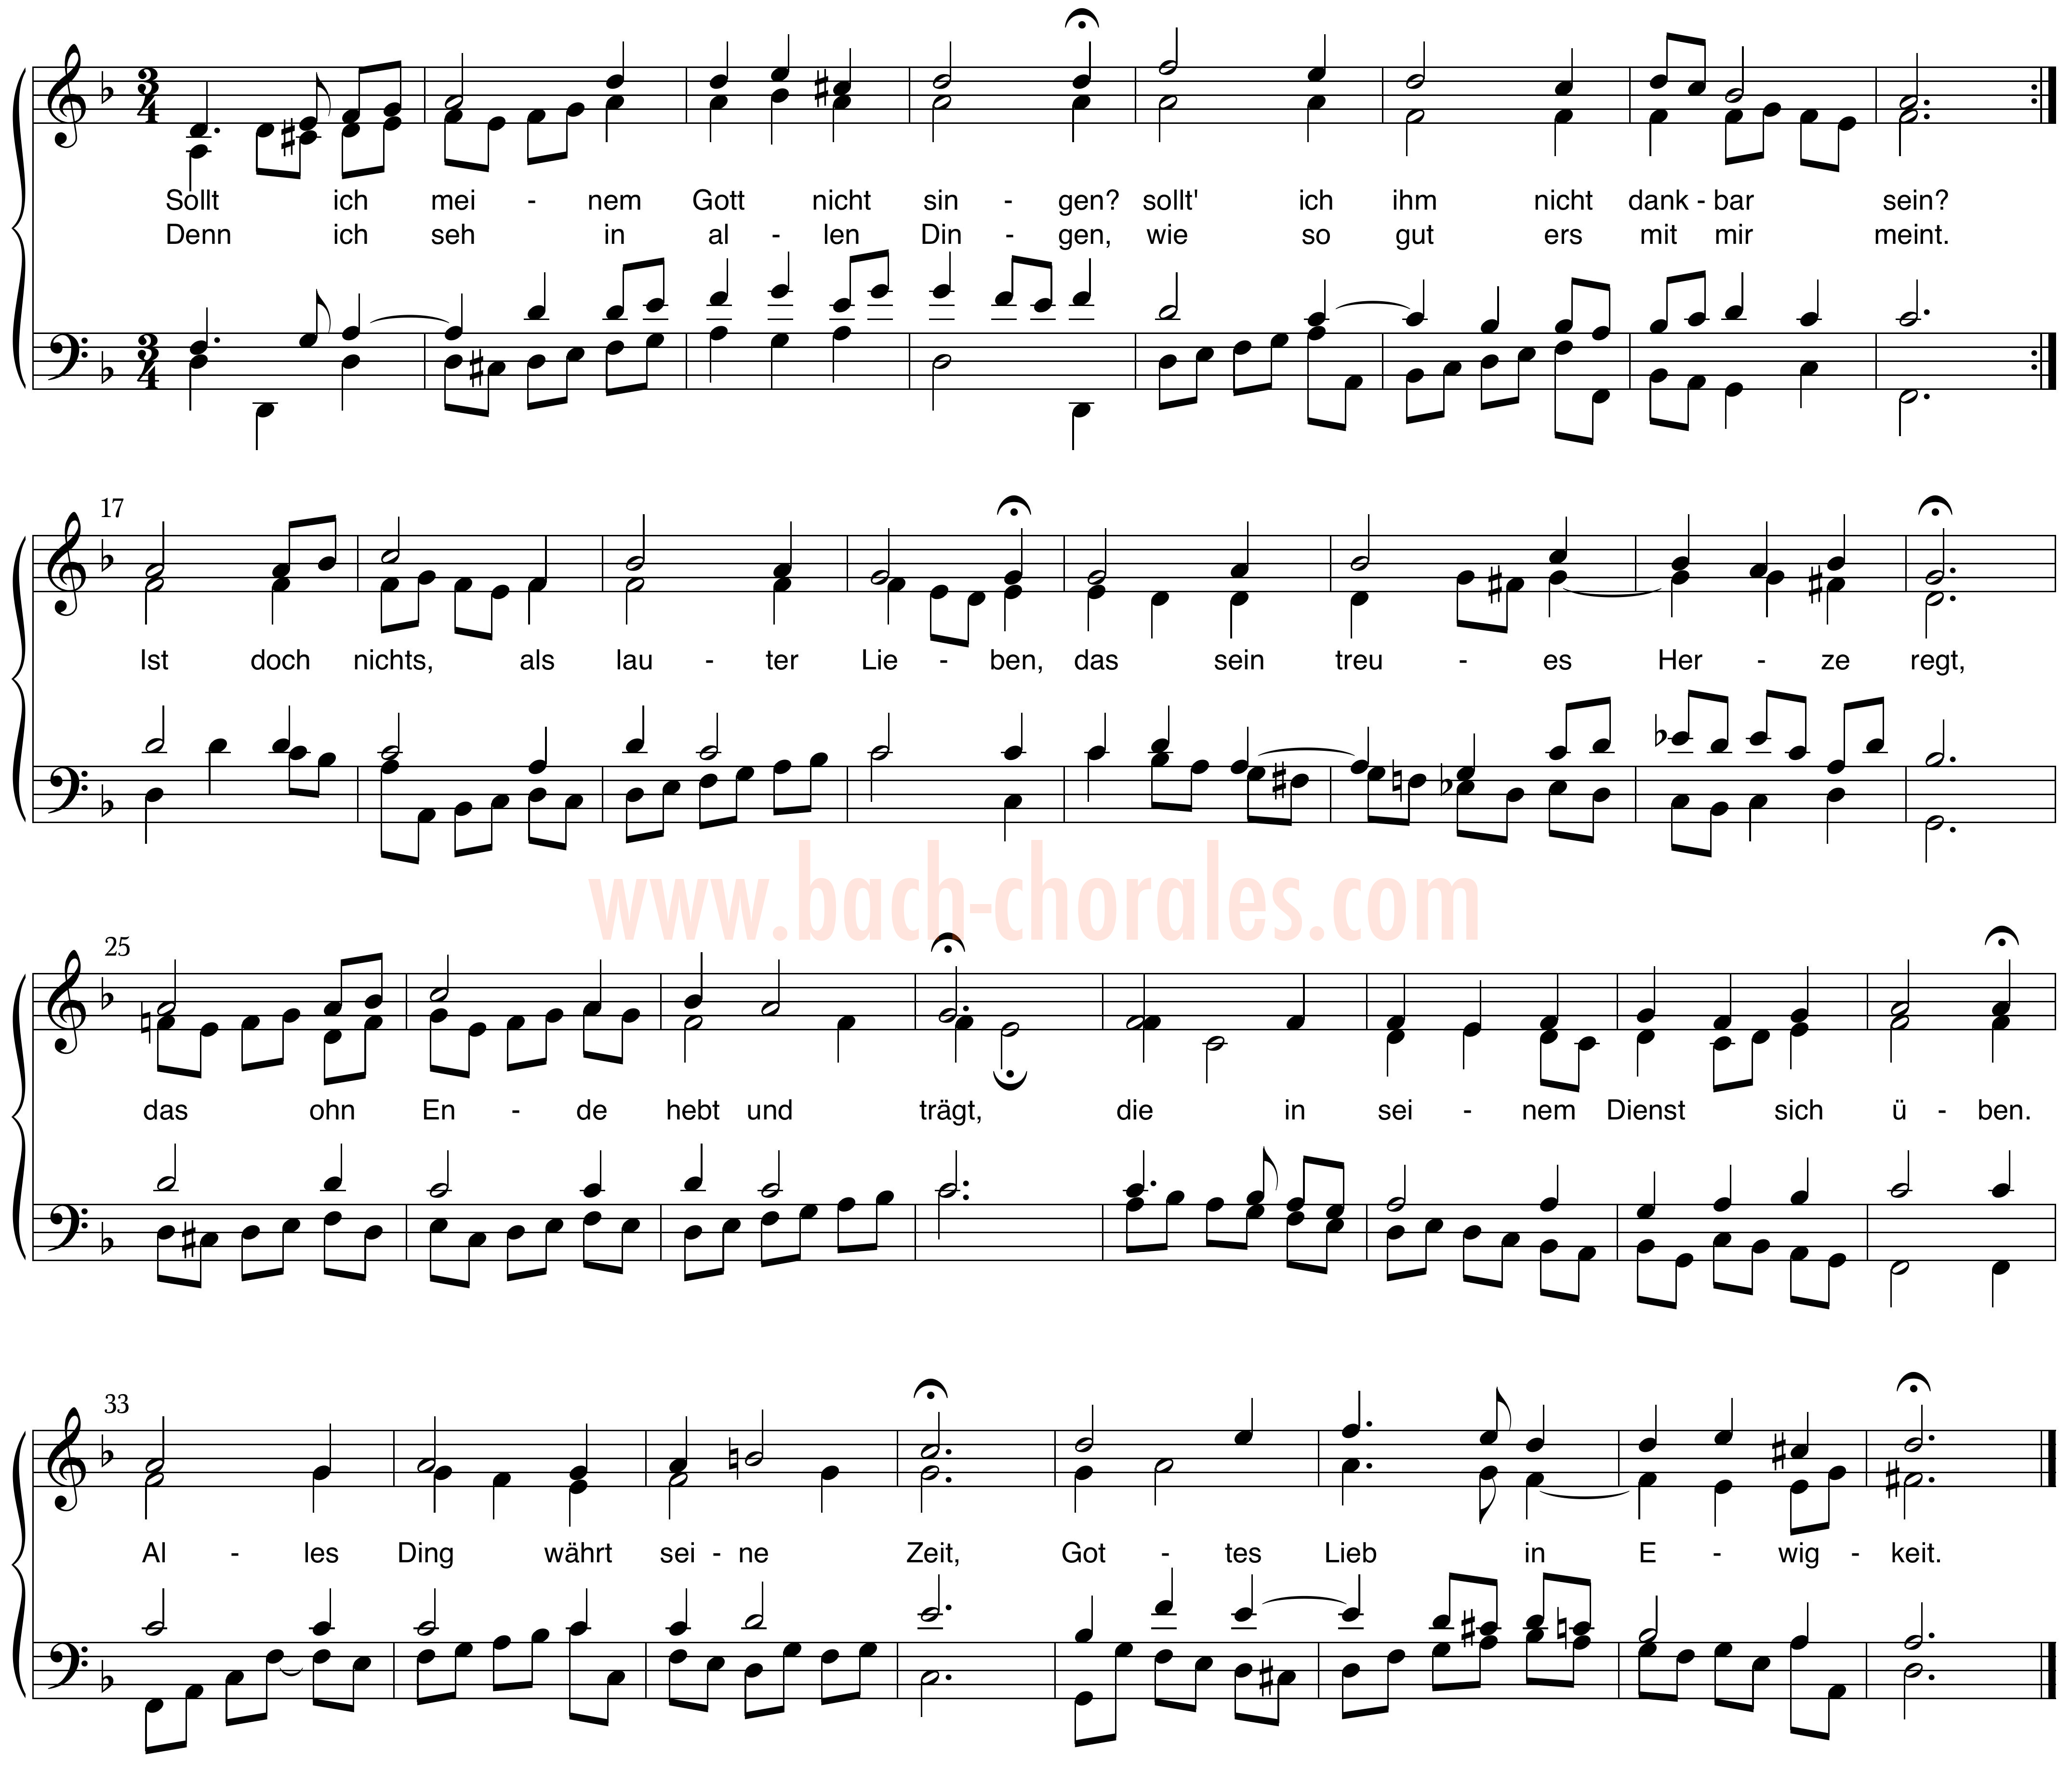 notenbeeld BWV 413 op https://www.bach-chorales.com/